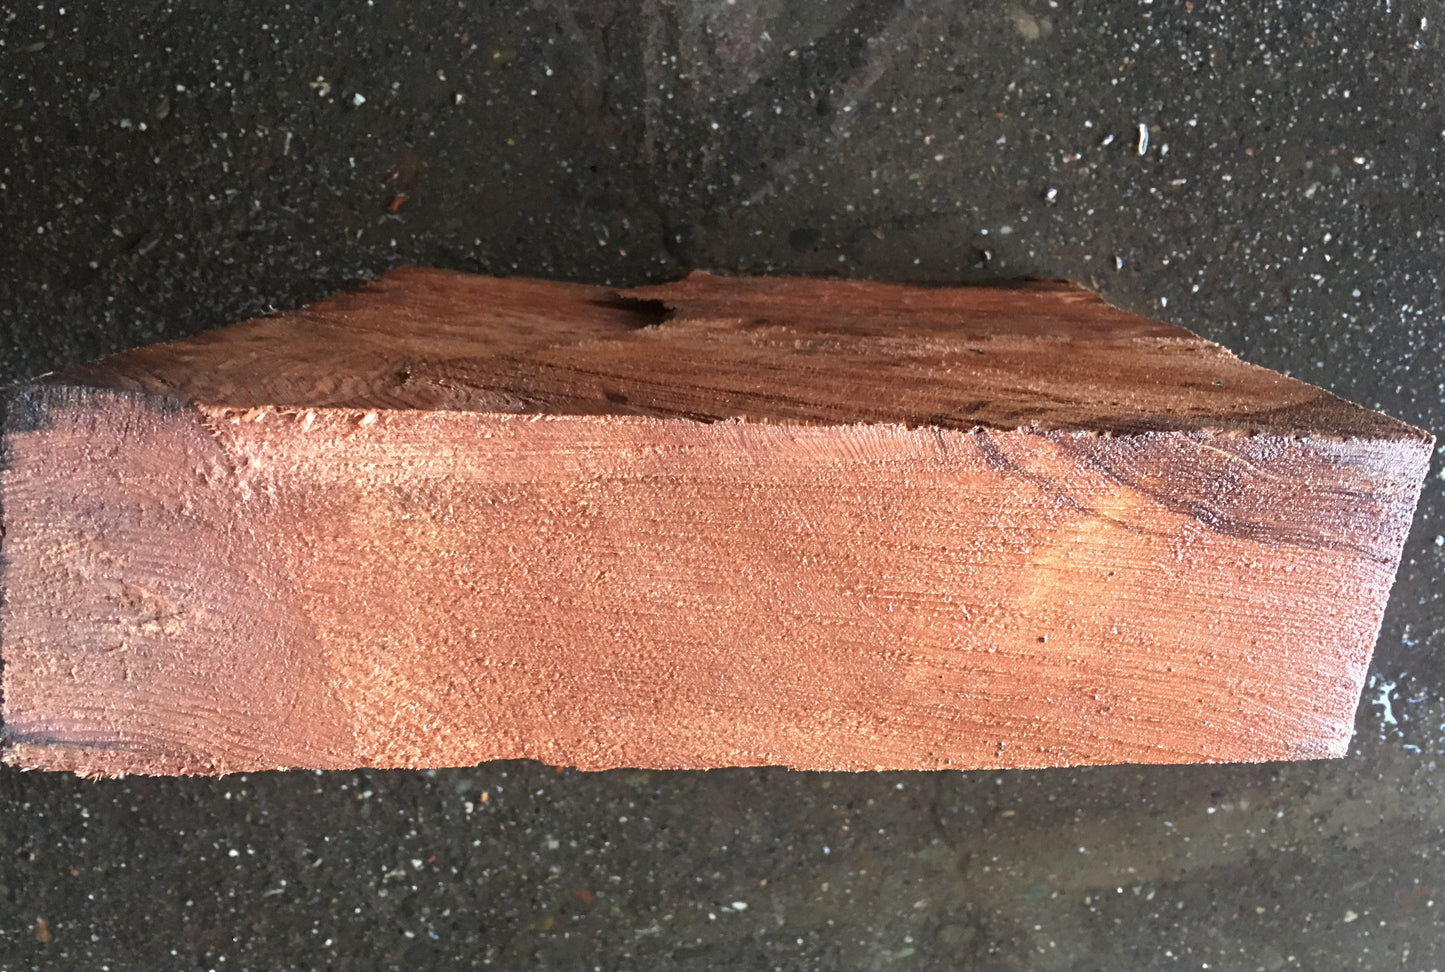 Bowl turning | wood turning | DIY wood crafts | redwood burl | 19-08